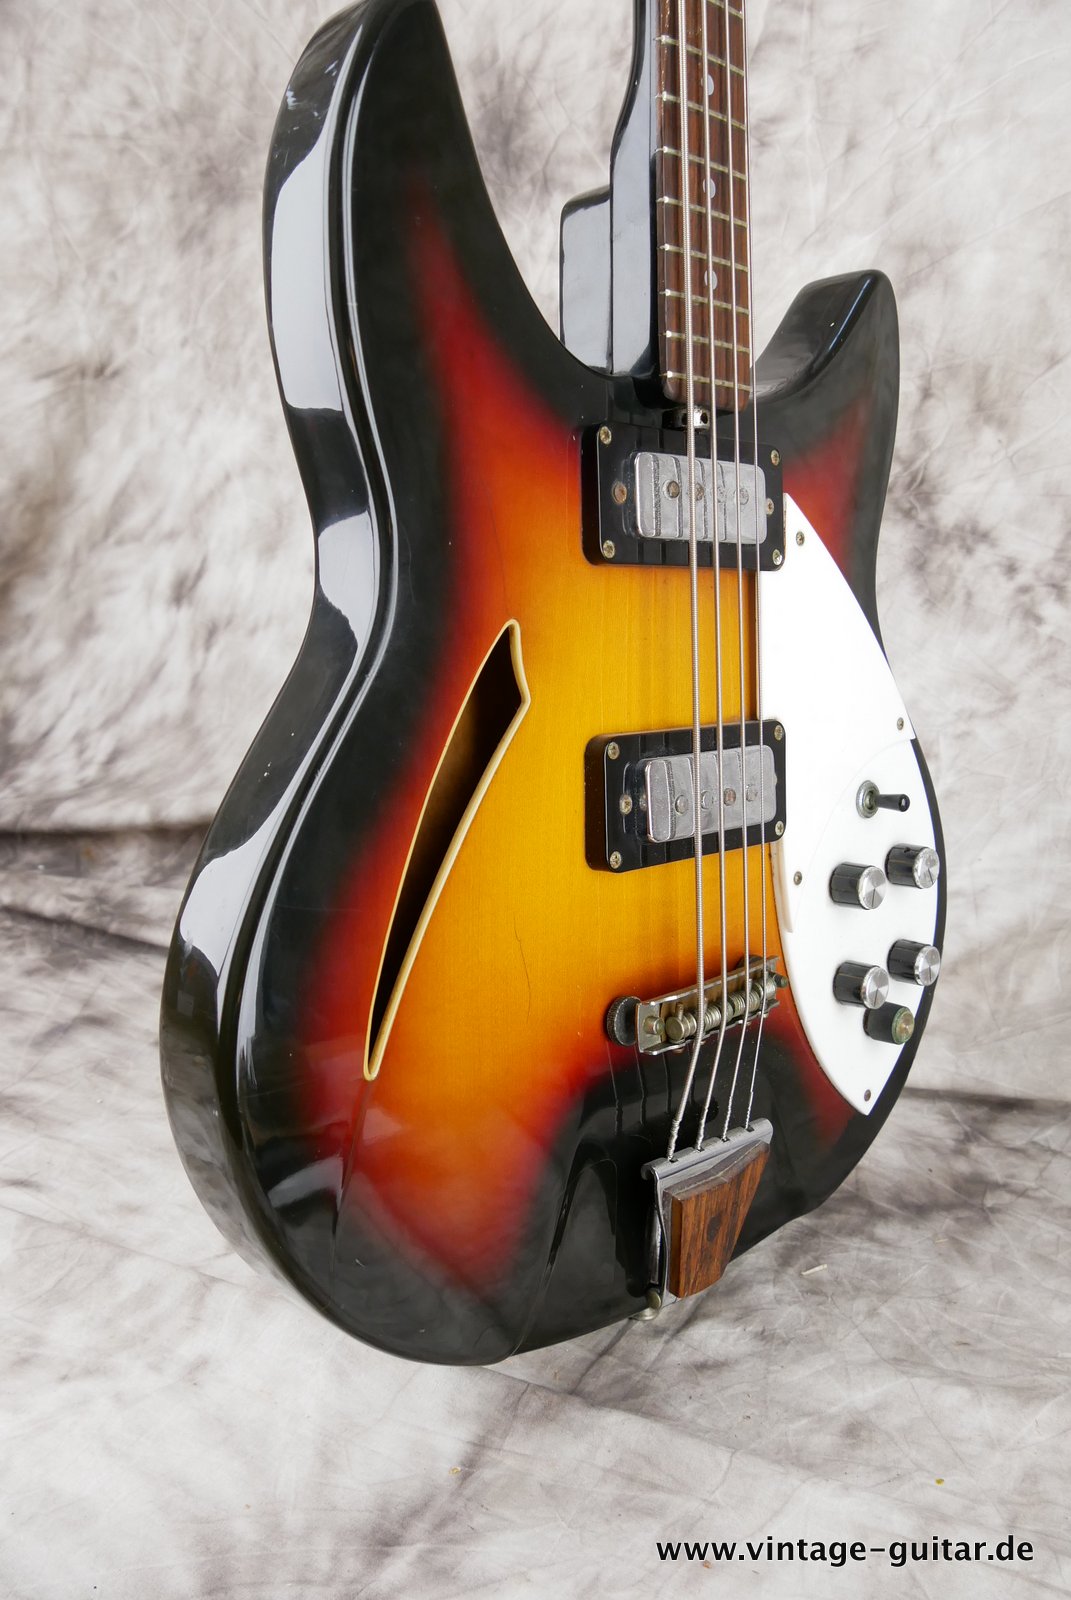 Shaftesbury-Bass-3263-1969-Italy-Eko-made-010.JPG